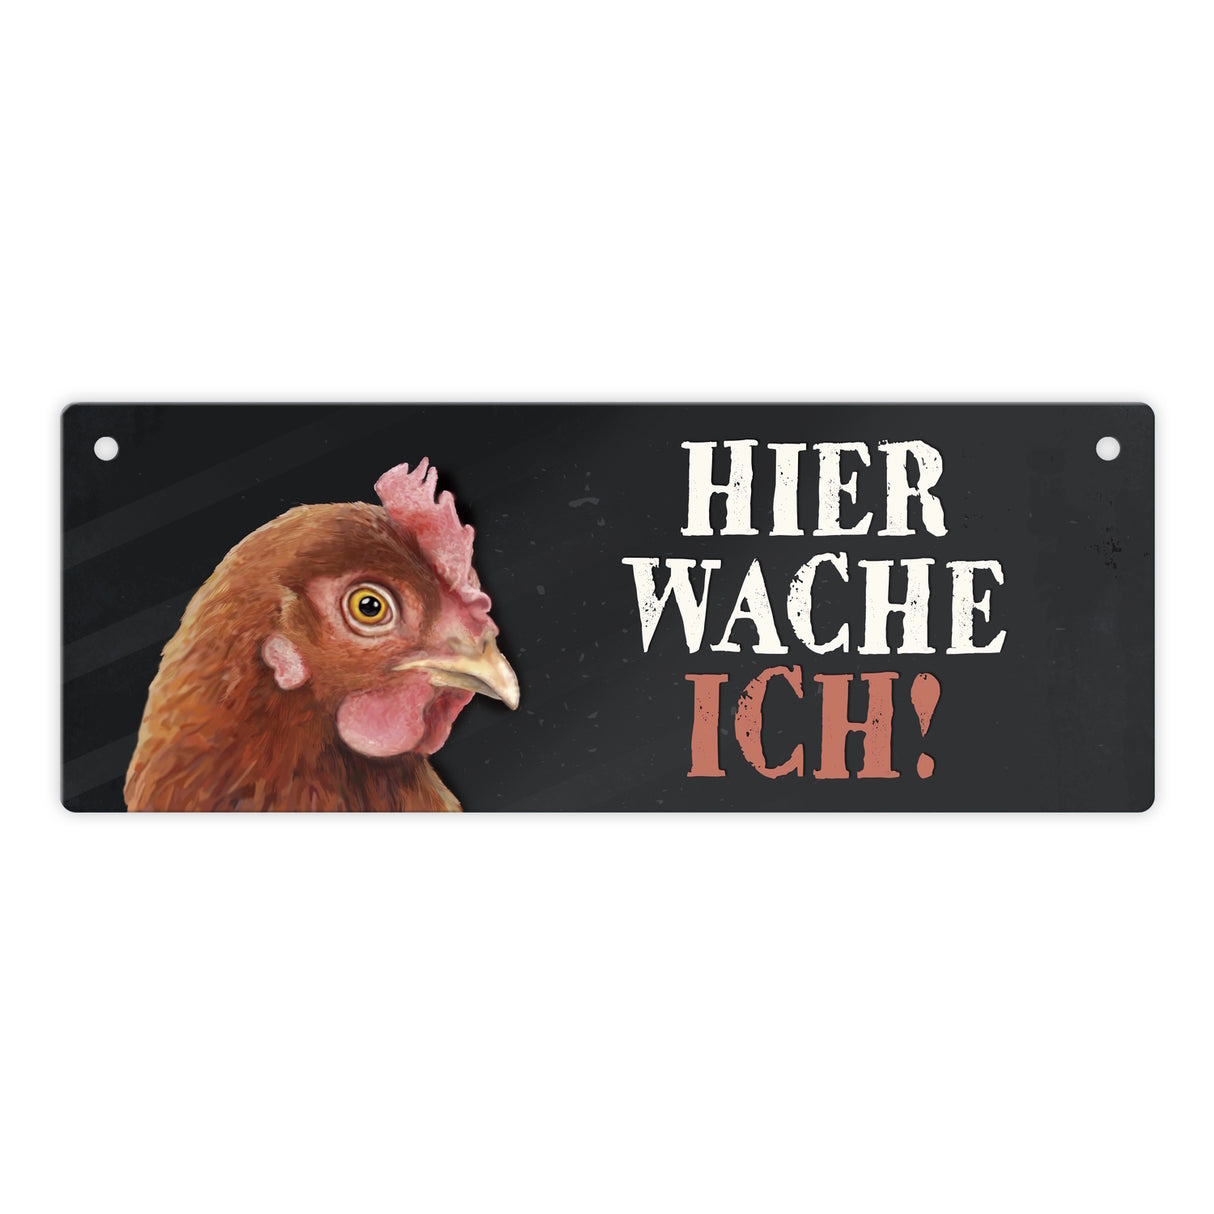 Metallschild mit Huhn Motiv und Spruch: Hier wache ich!